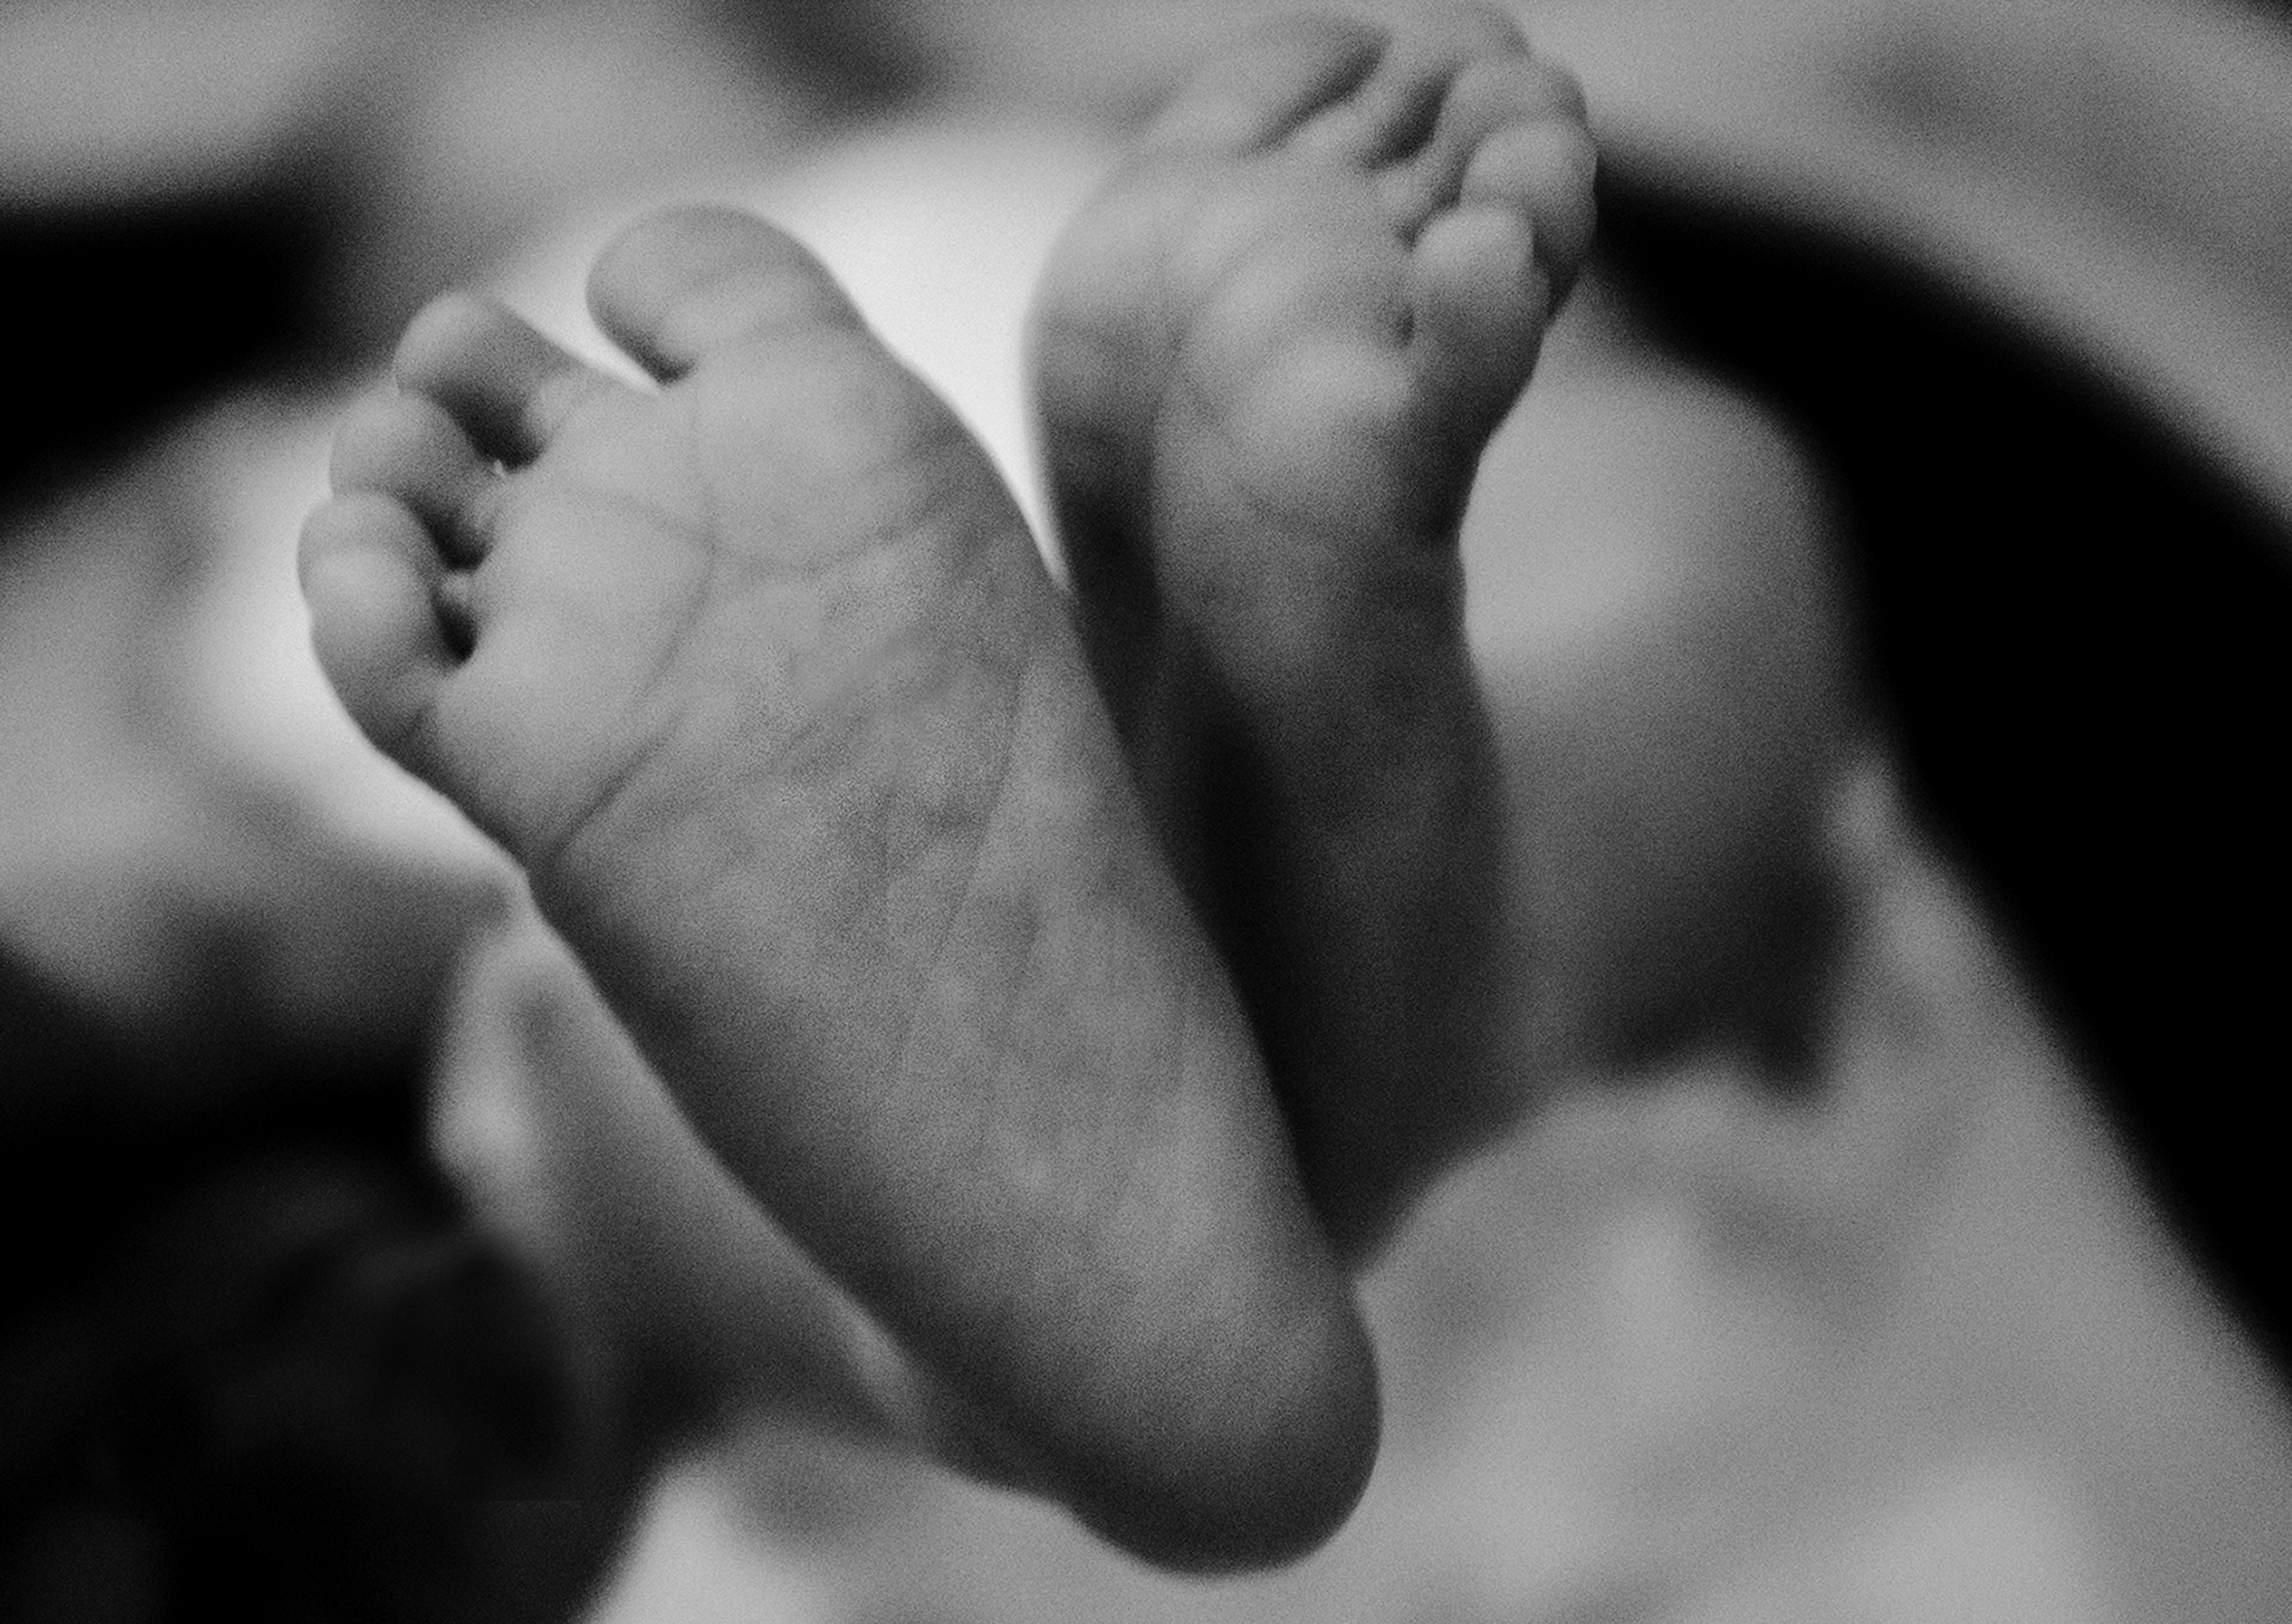 A close-up of a newborn’s feet.